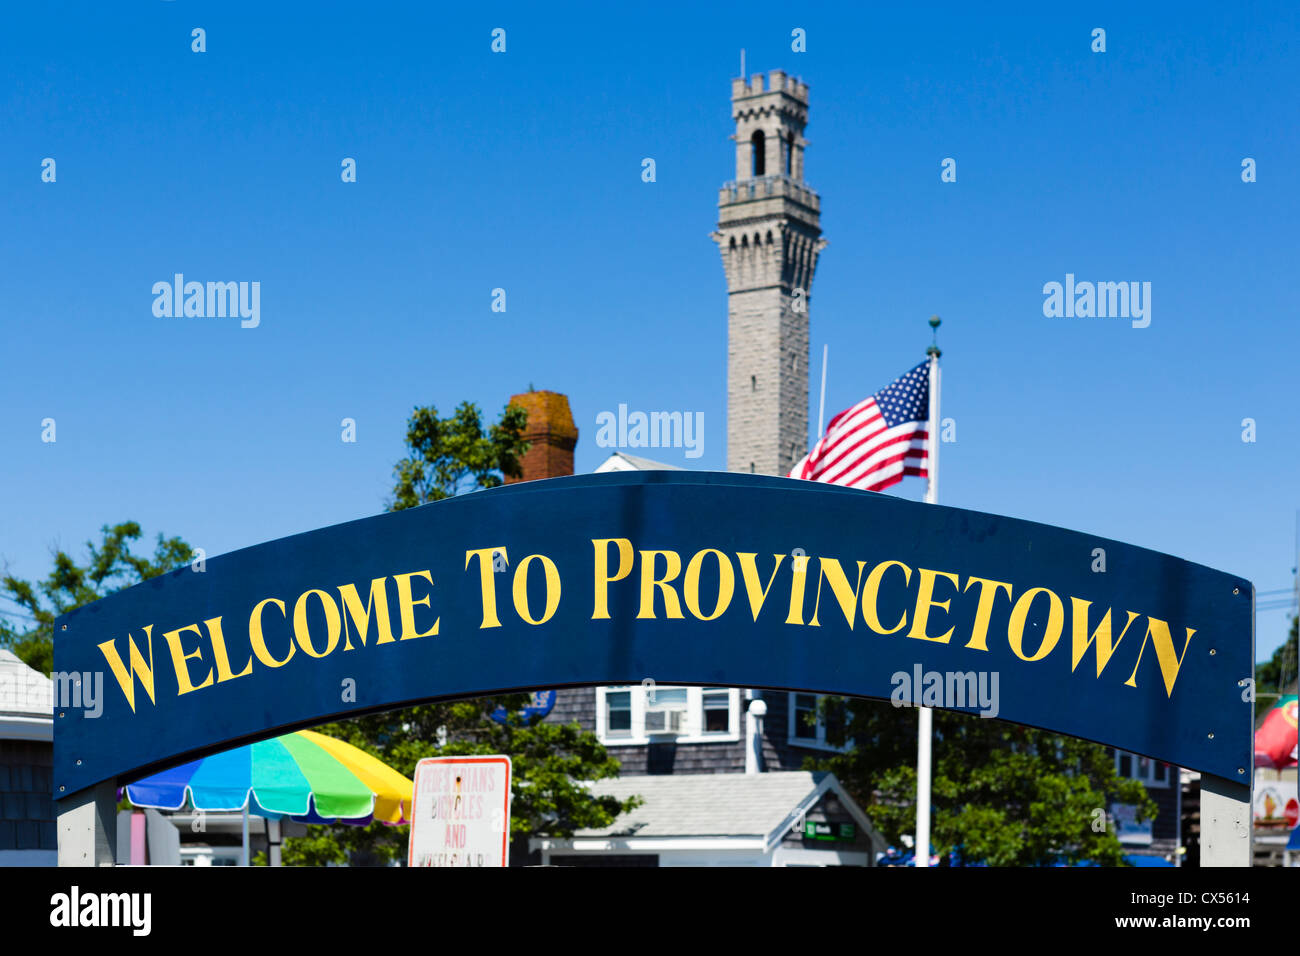 Herzlich Willkommen Sie in Provincetown Zeichen mit dem Pilgrim Monument Turm hinter, Provincetown, Cape Cod, Massachusetts, USA Stockfoto